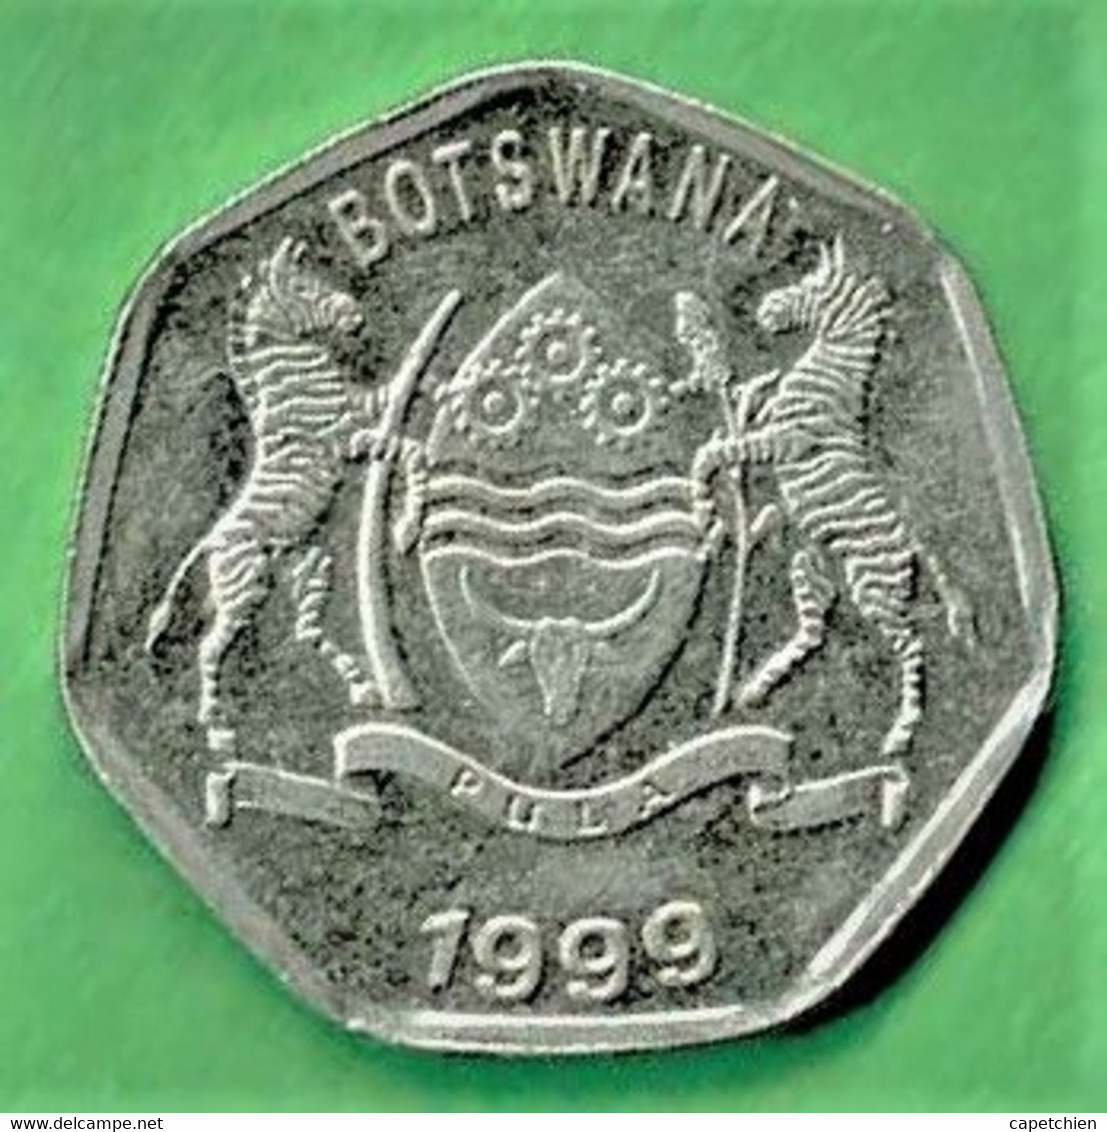 BOTSWANA / 25 THEBE / 1999 / ETAT SUP - Botswana